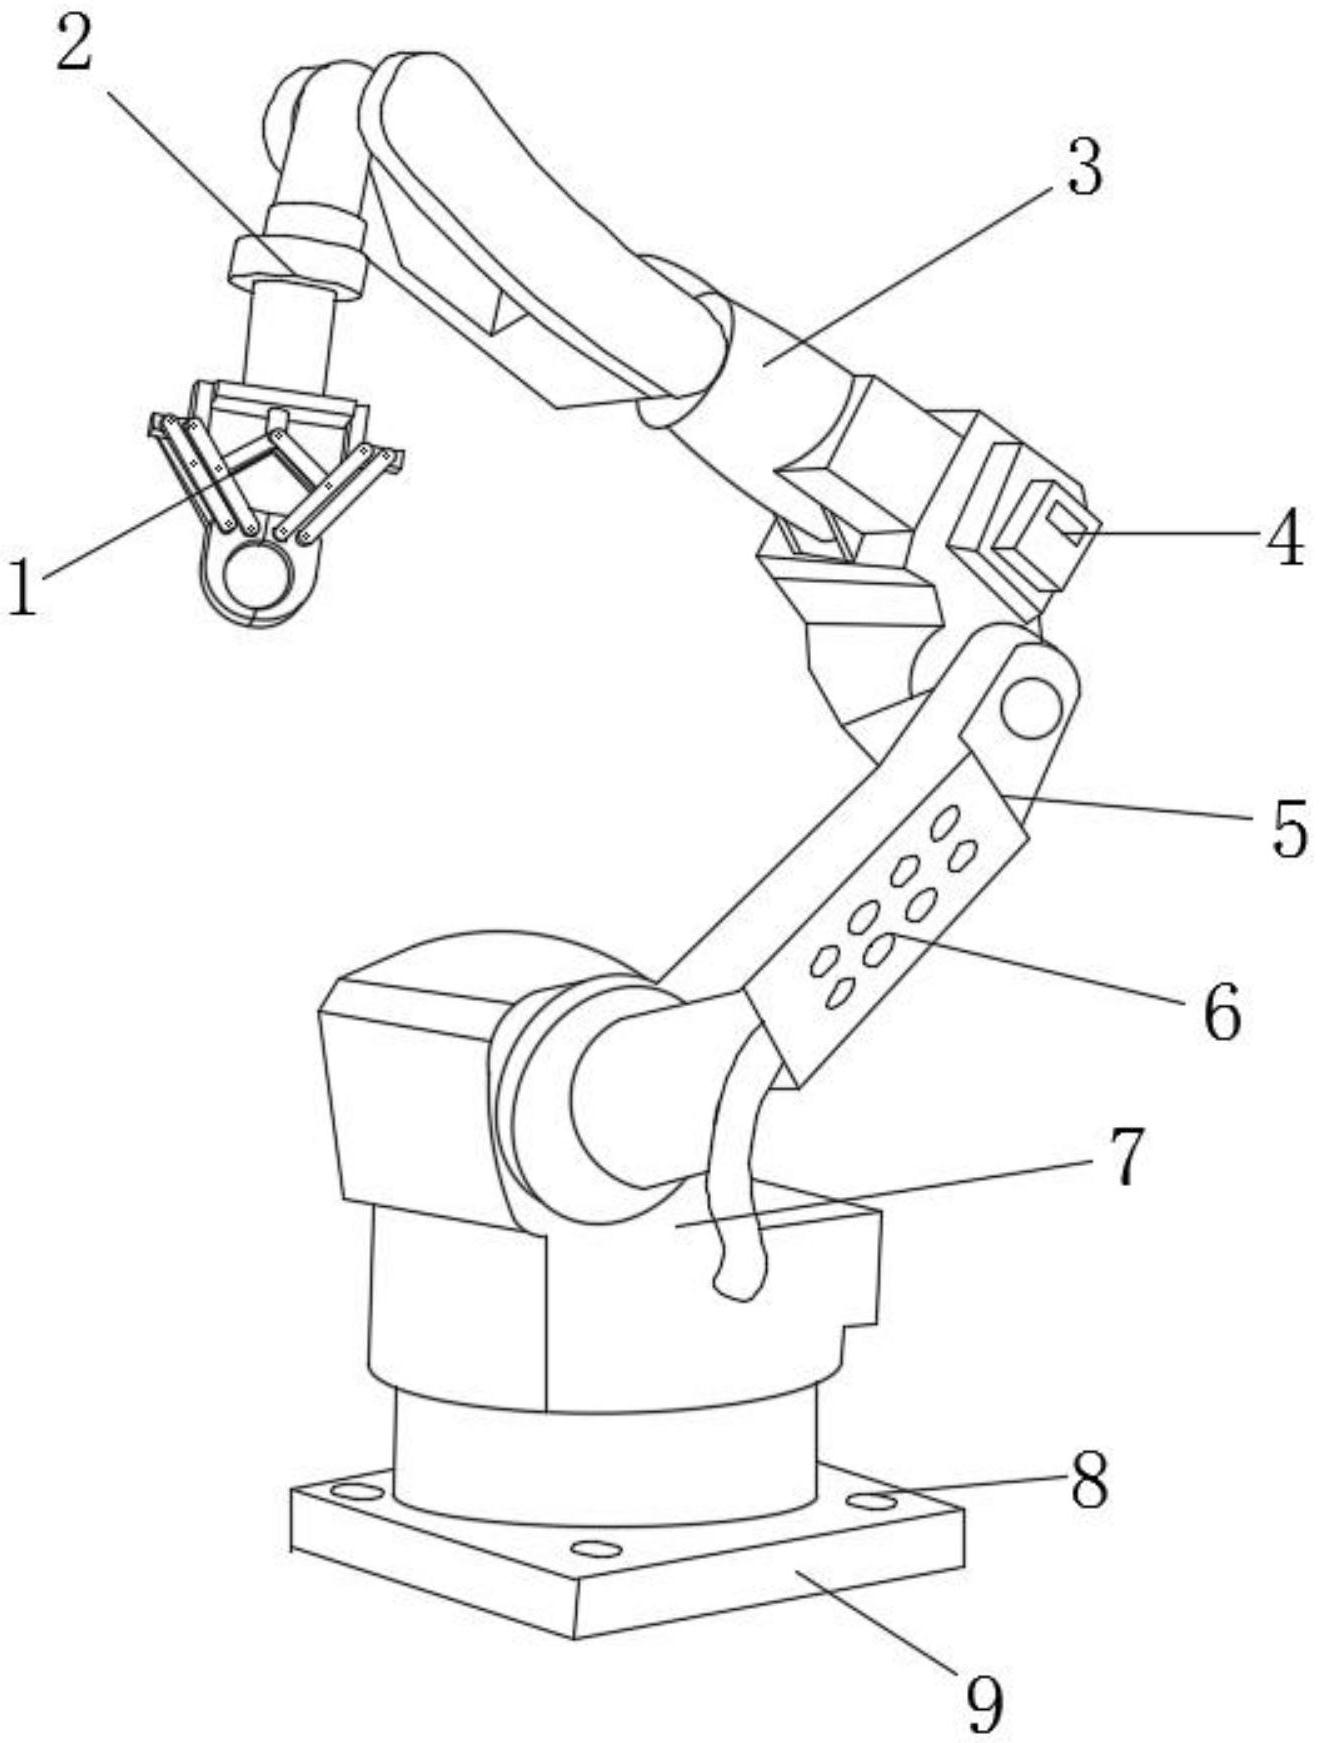 一种搬运工业机器人-专利